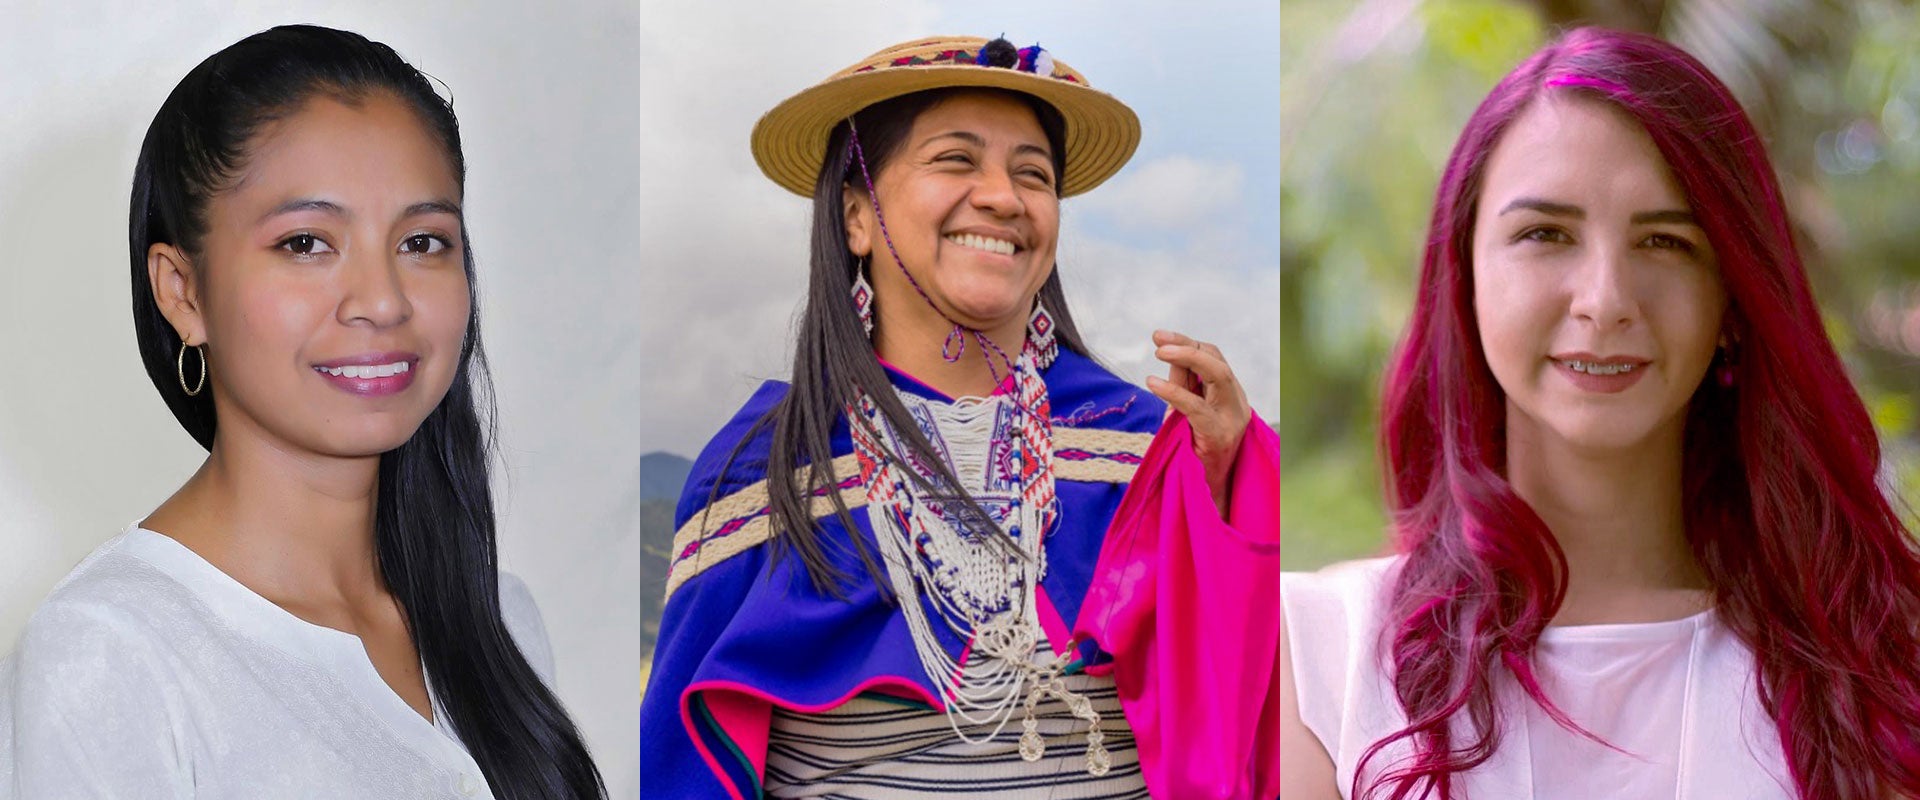 Hay un largo camino por recorrer": tres mujeres comparten cómo superaron la  violencia política en Colombia | ONU Mujeres